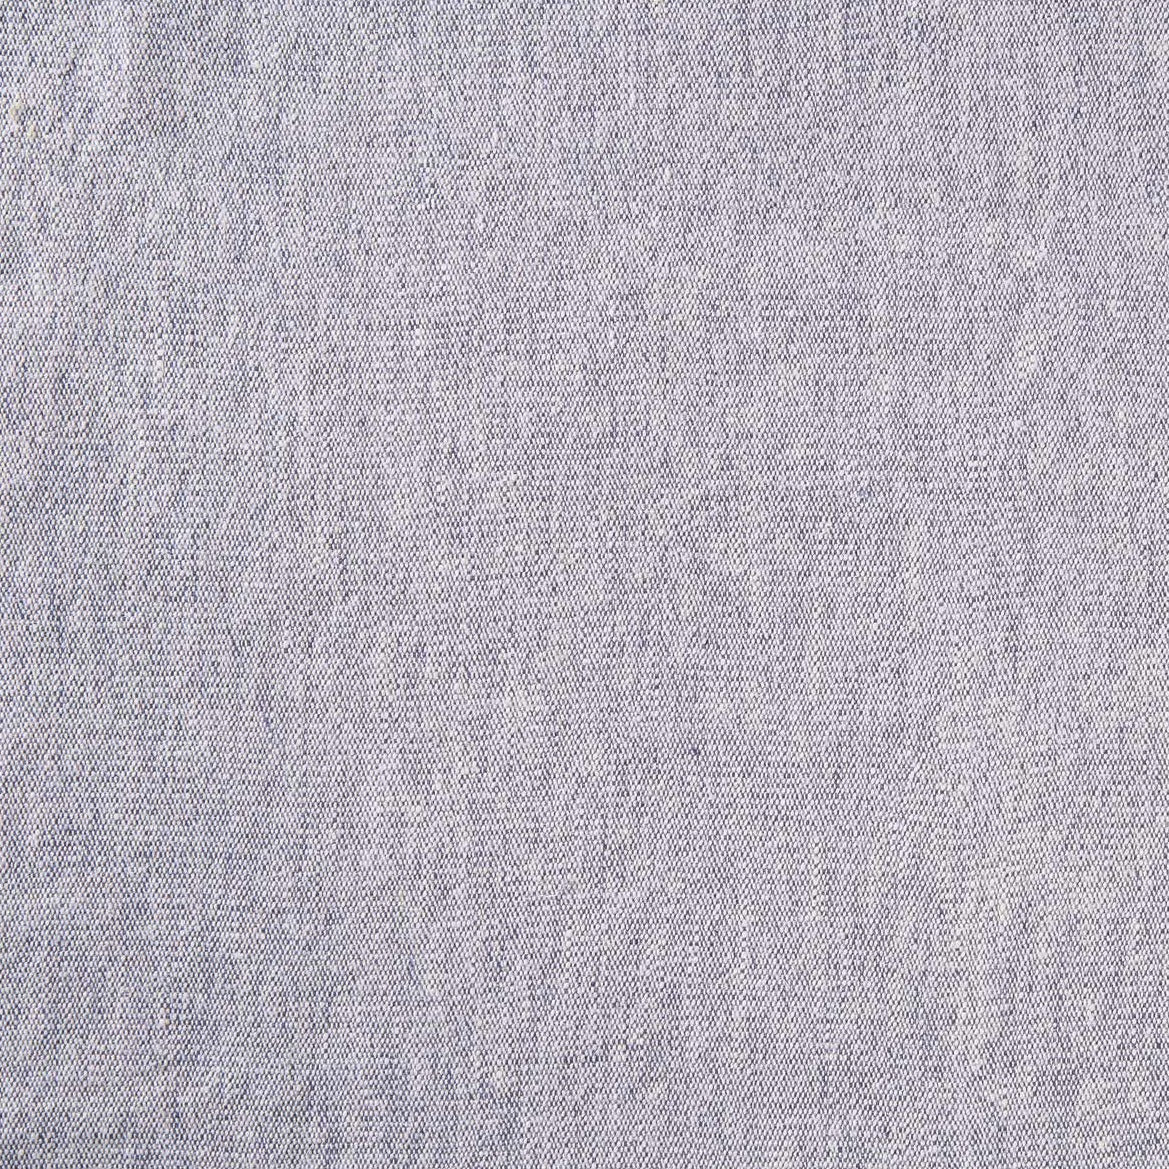 Plain Linen - Pale Blue